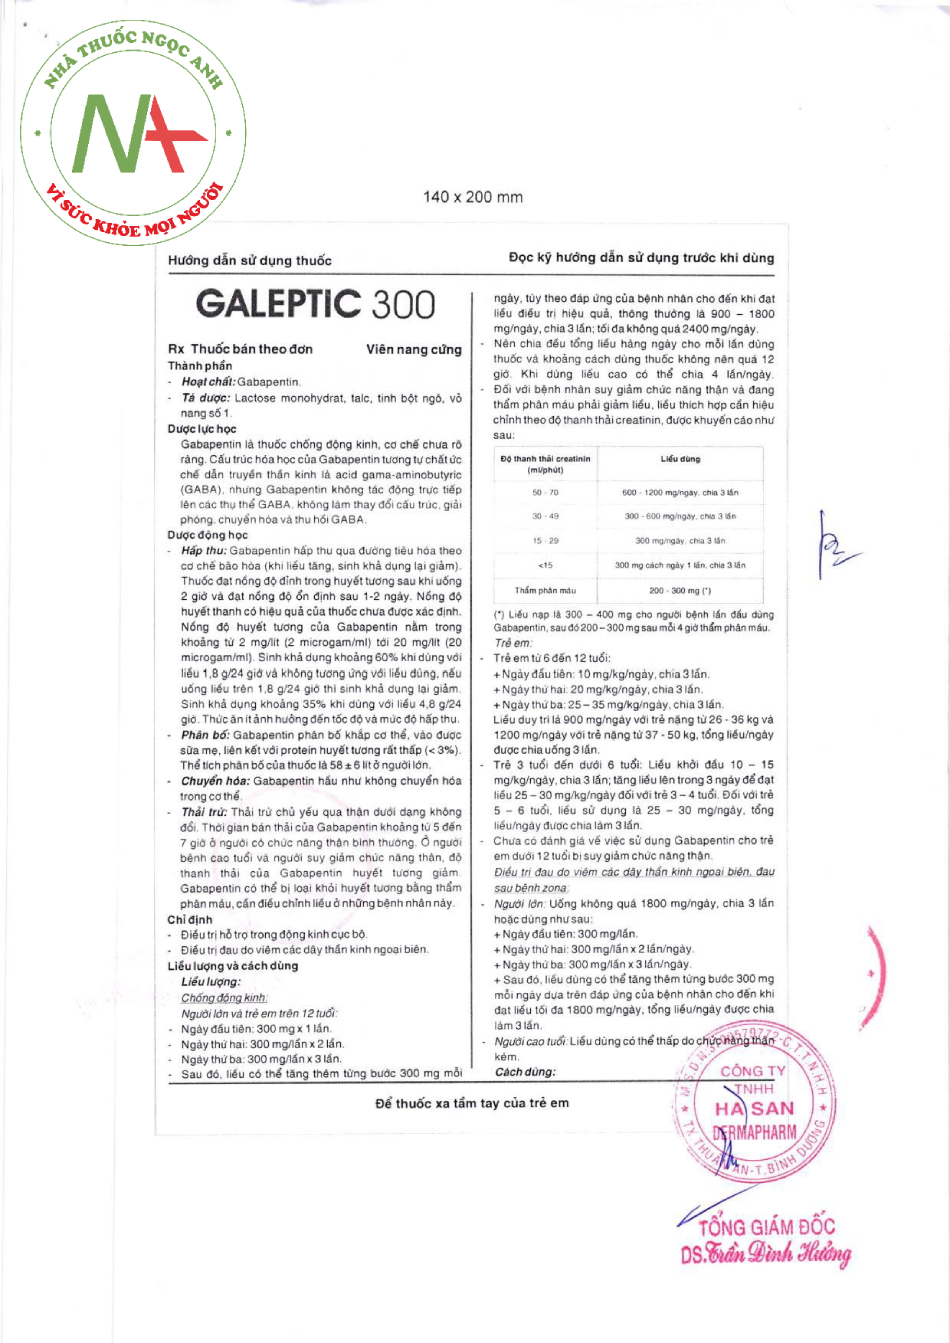 Hướng dẫn sử dụng Galeptic 300